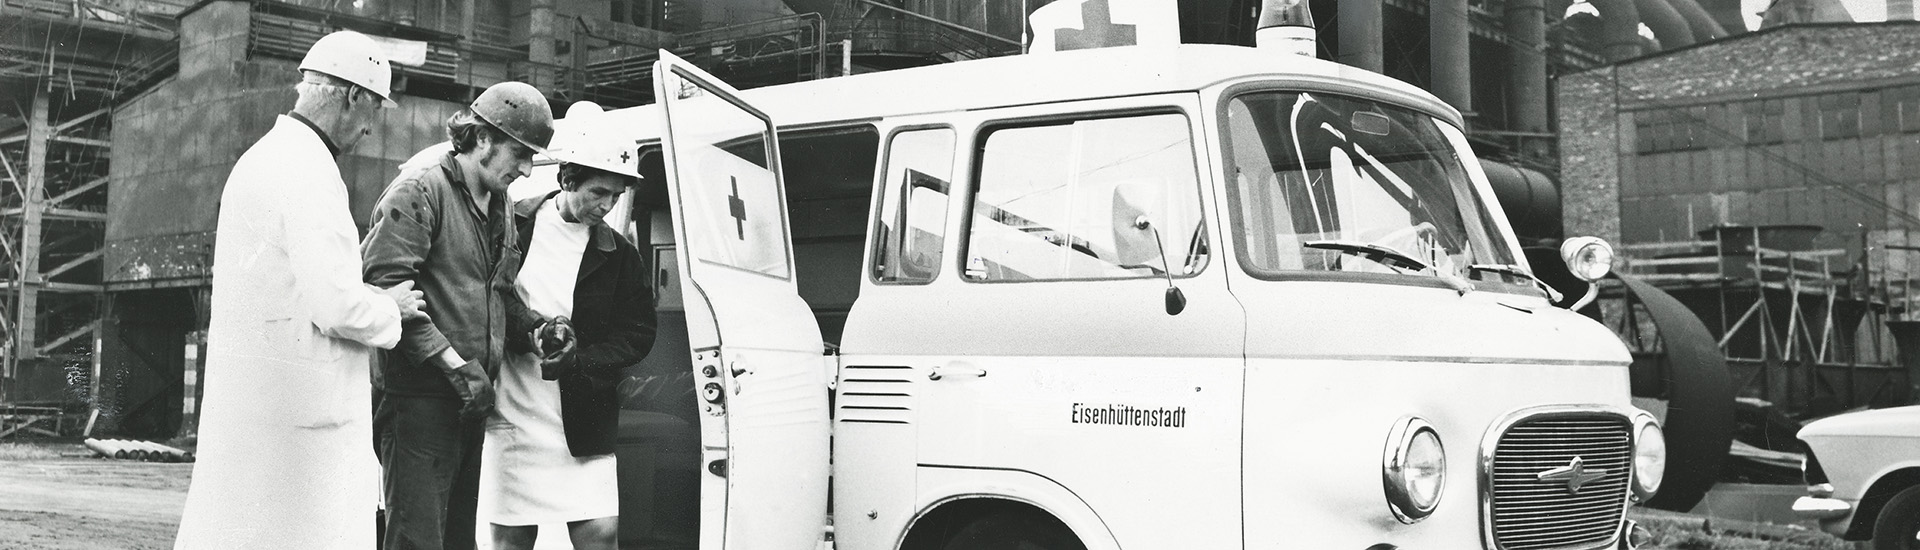 historisches Foto: Einsatzfahrzeug und Helfer im Stahlwerk Eisenhüttenstadt